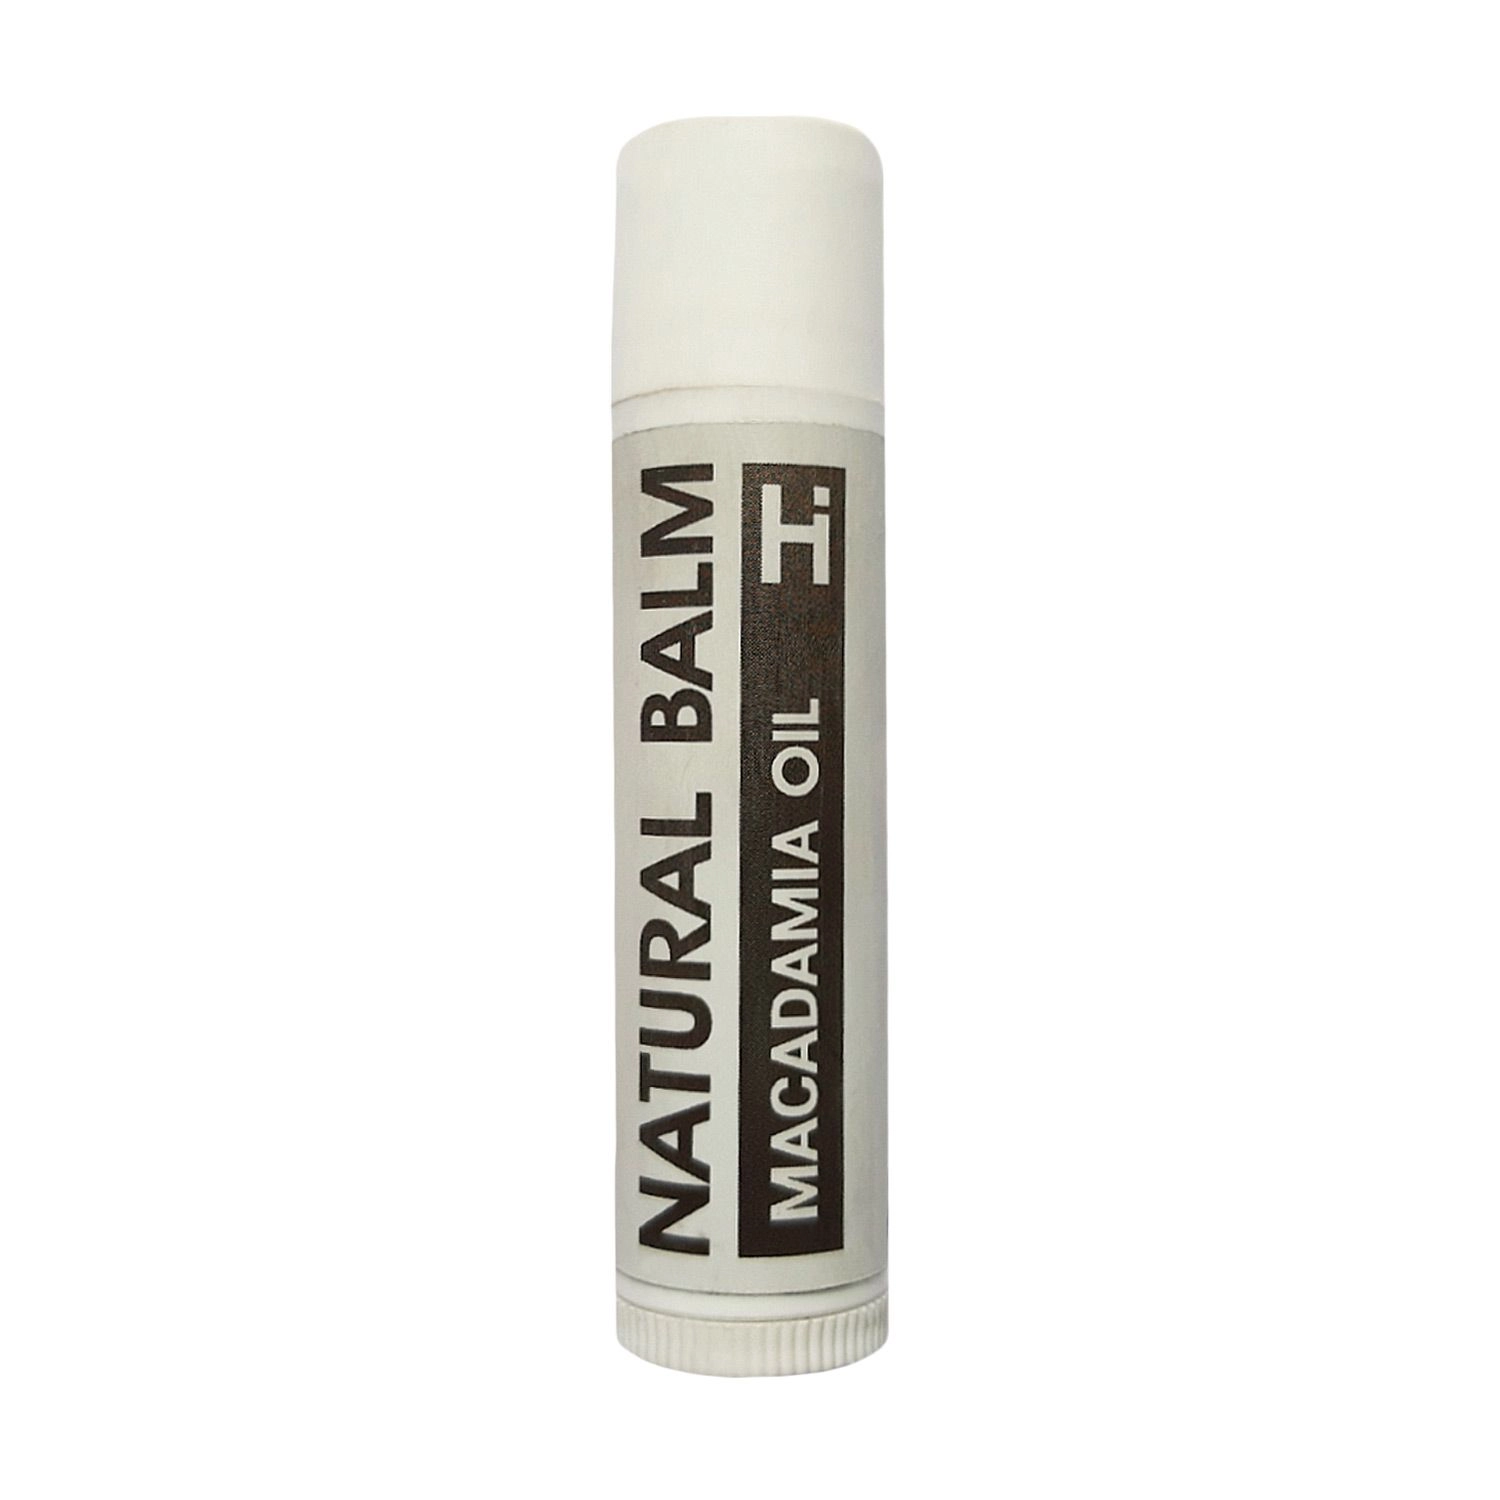 Hillary Питательный бальзам для губ Natural Мacadamia Lip Balm с маслом макадамии, 5 г - фото N1